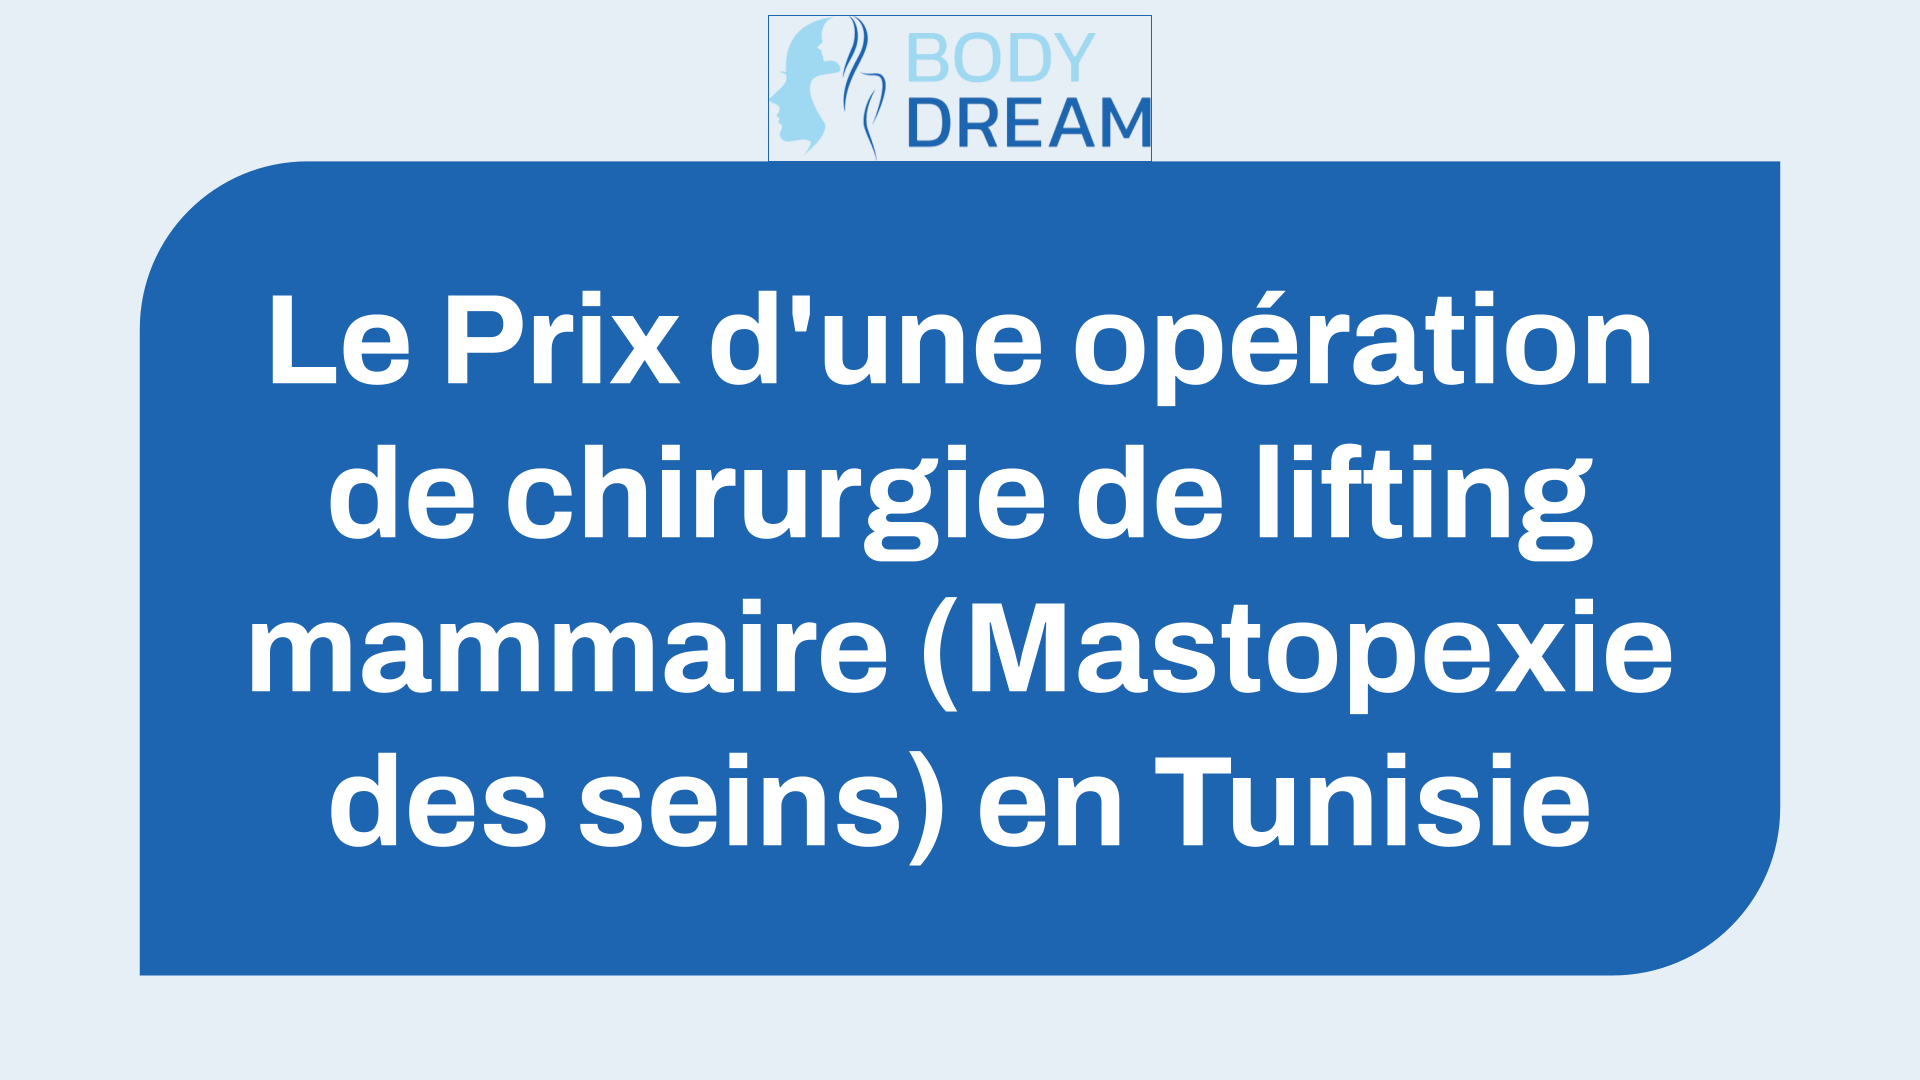 Le Prix d'une opération de chirurgie de lifting mammaire (Mastopexie des seins) en Tunisie (le Tarif de l'intervention).